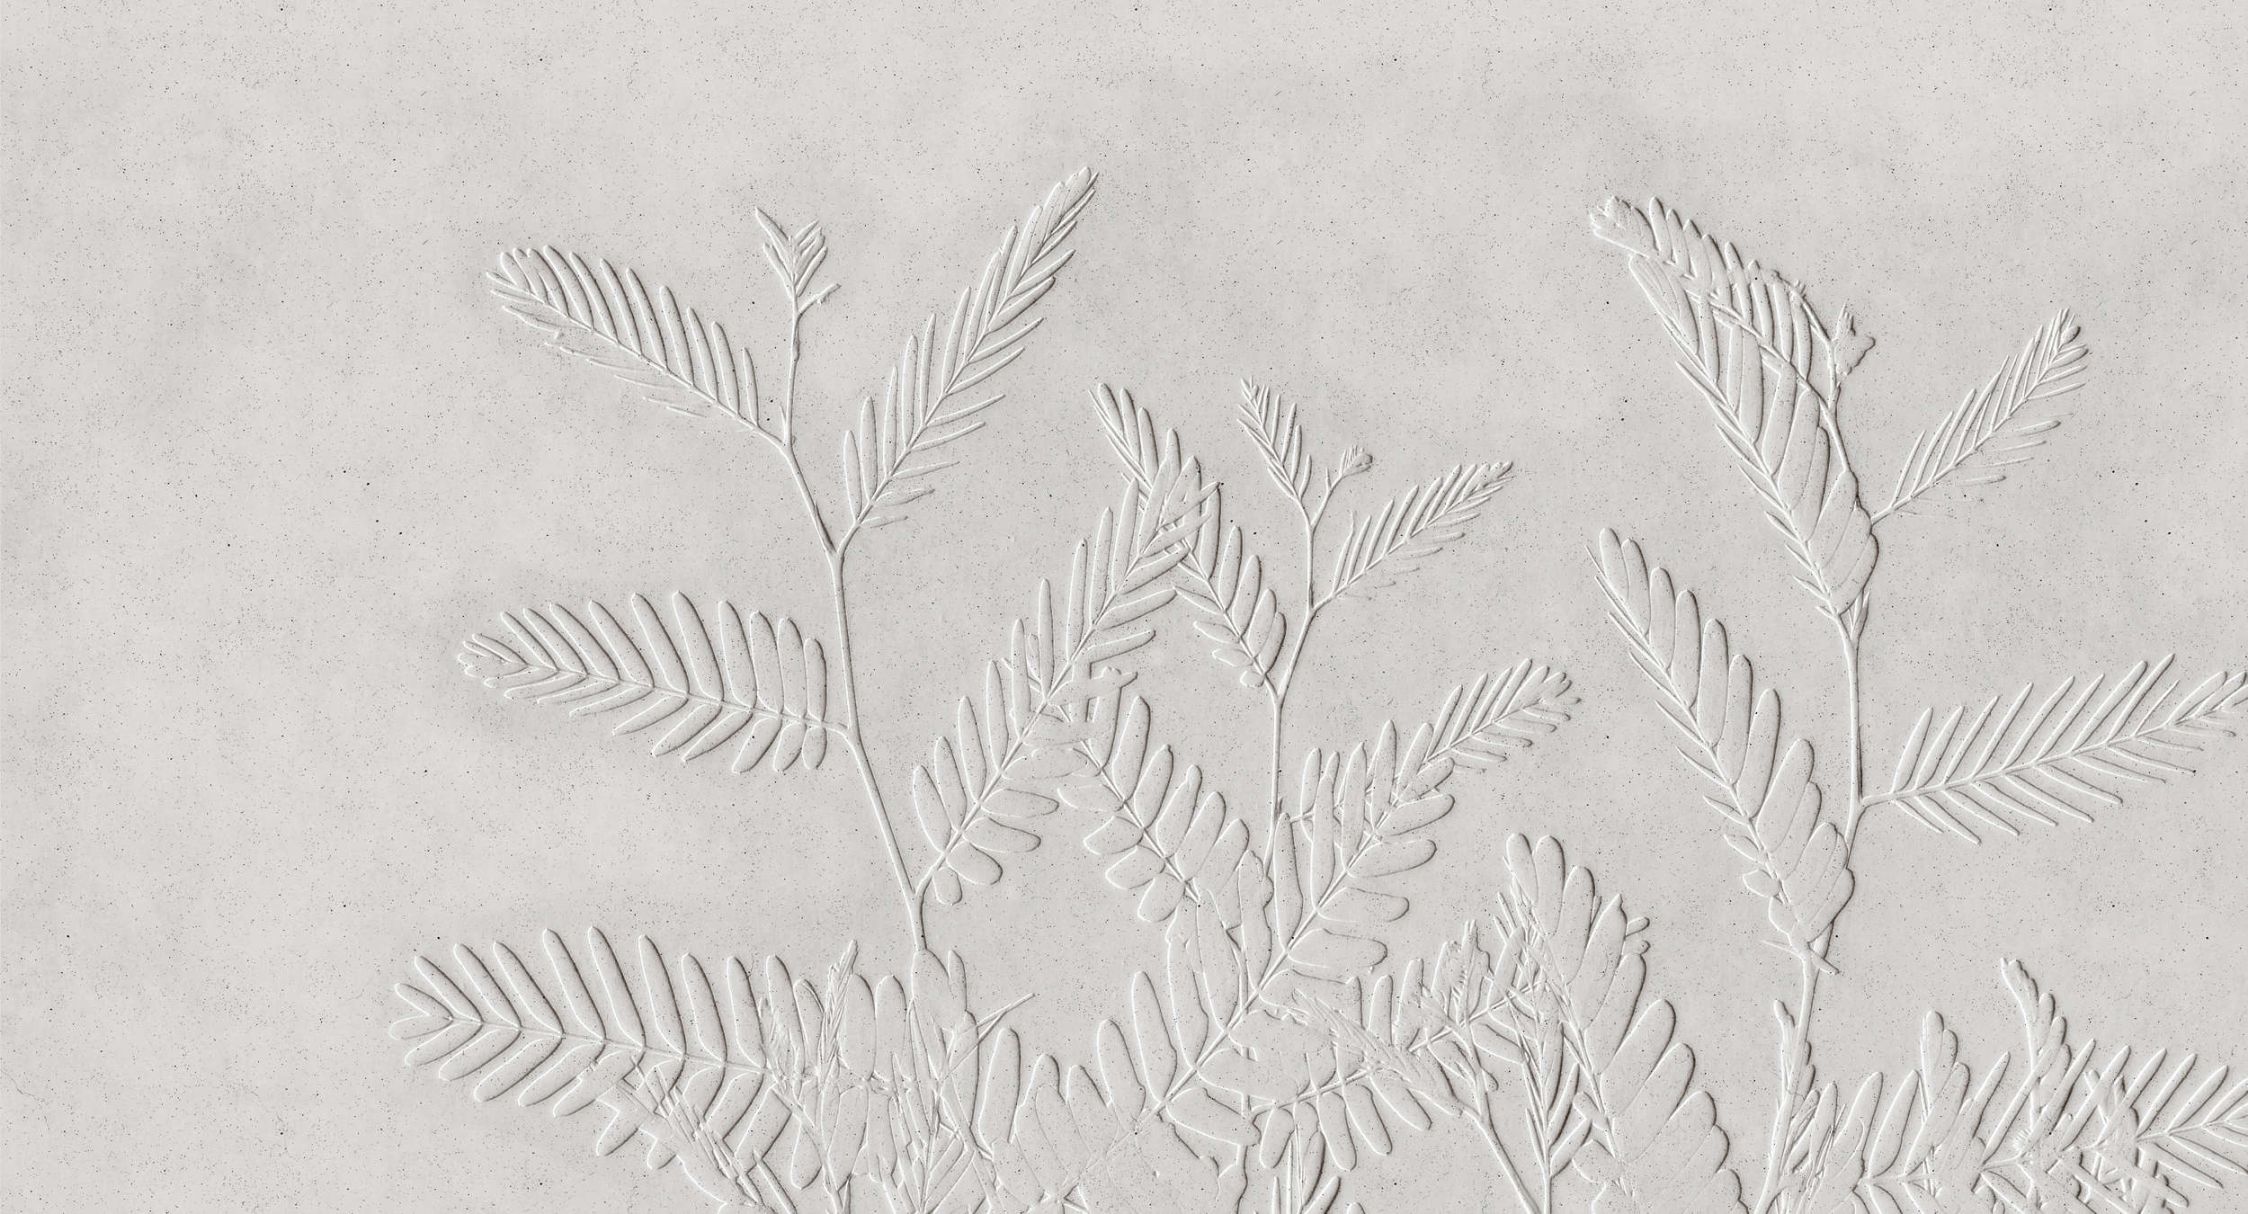             papier peint en papier panoramique »fern« - feuilles de fougères devant une structure d'enduit de béton - clair | Intissé lisse, légèrement nacré
        